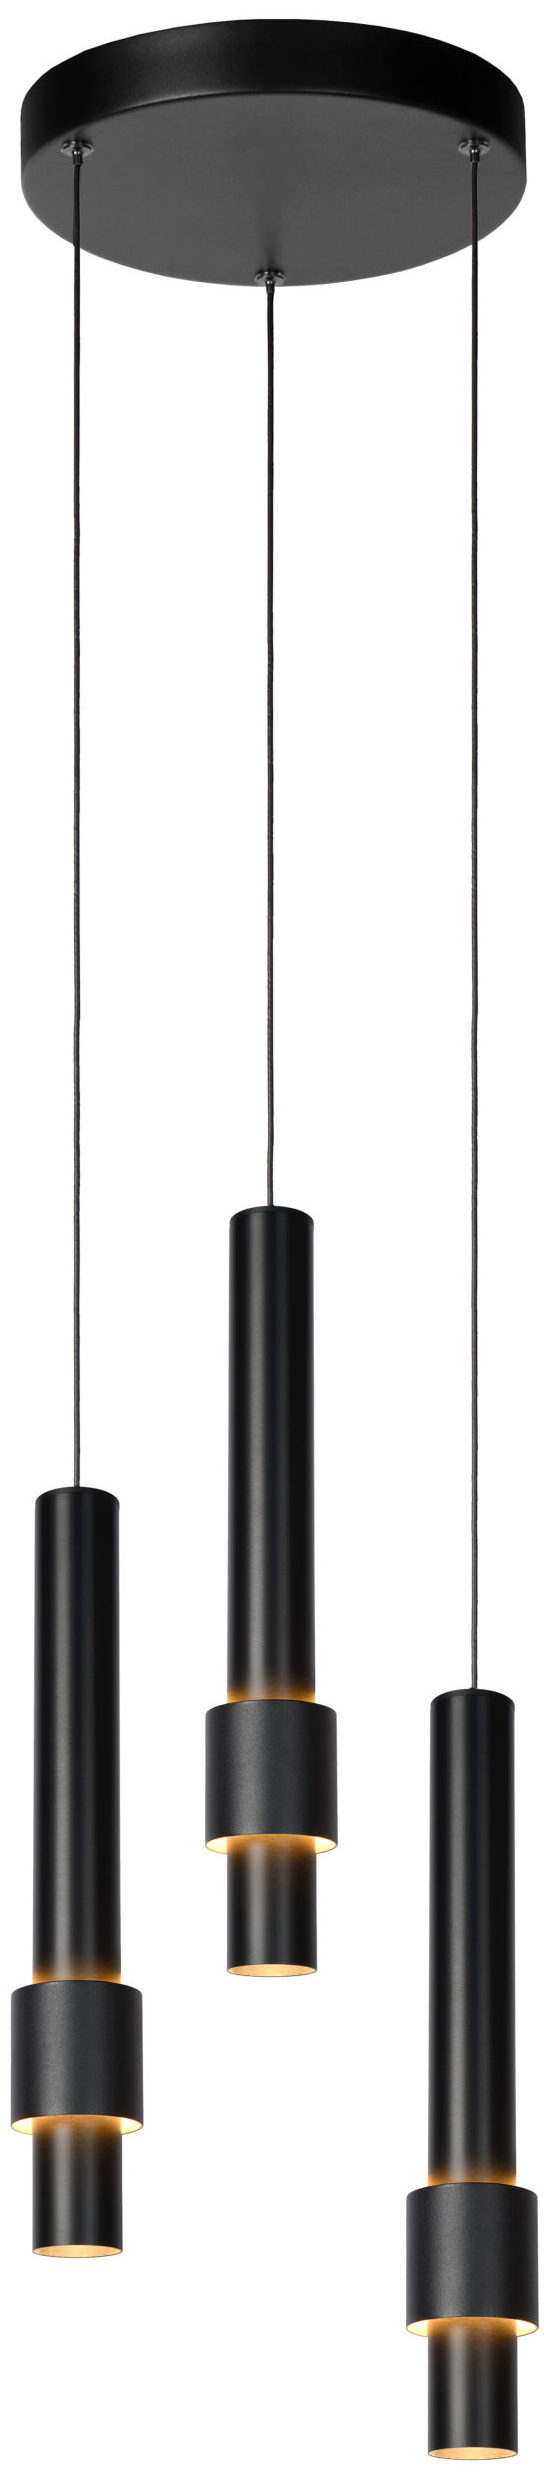 Lucide Margary Hanglamp Ø28 Cm Led Dimb. 3x4,3w 2700k - Zwart Lucide Hanglamp 24402/15/30